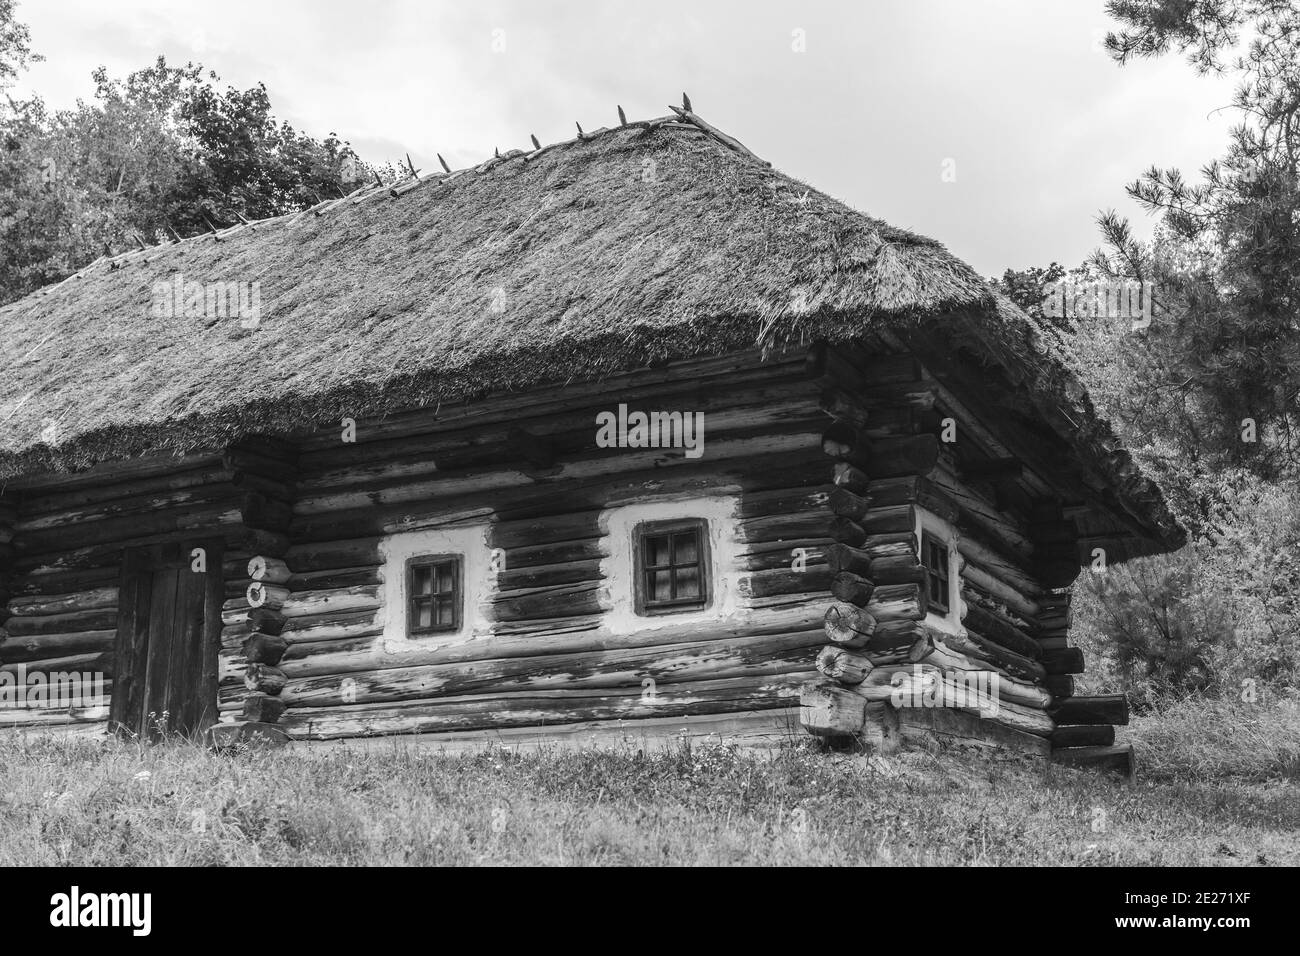 Noir blanc photo de l'ancienne architecture rurale. Maison en bois avec toit de chaume, cabane en bois. Banque D'Images